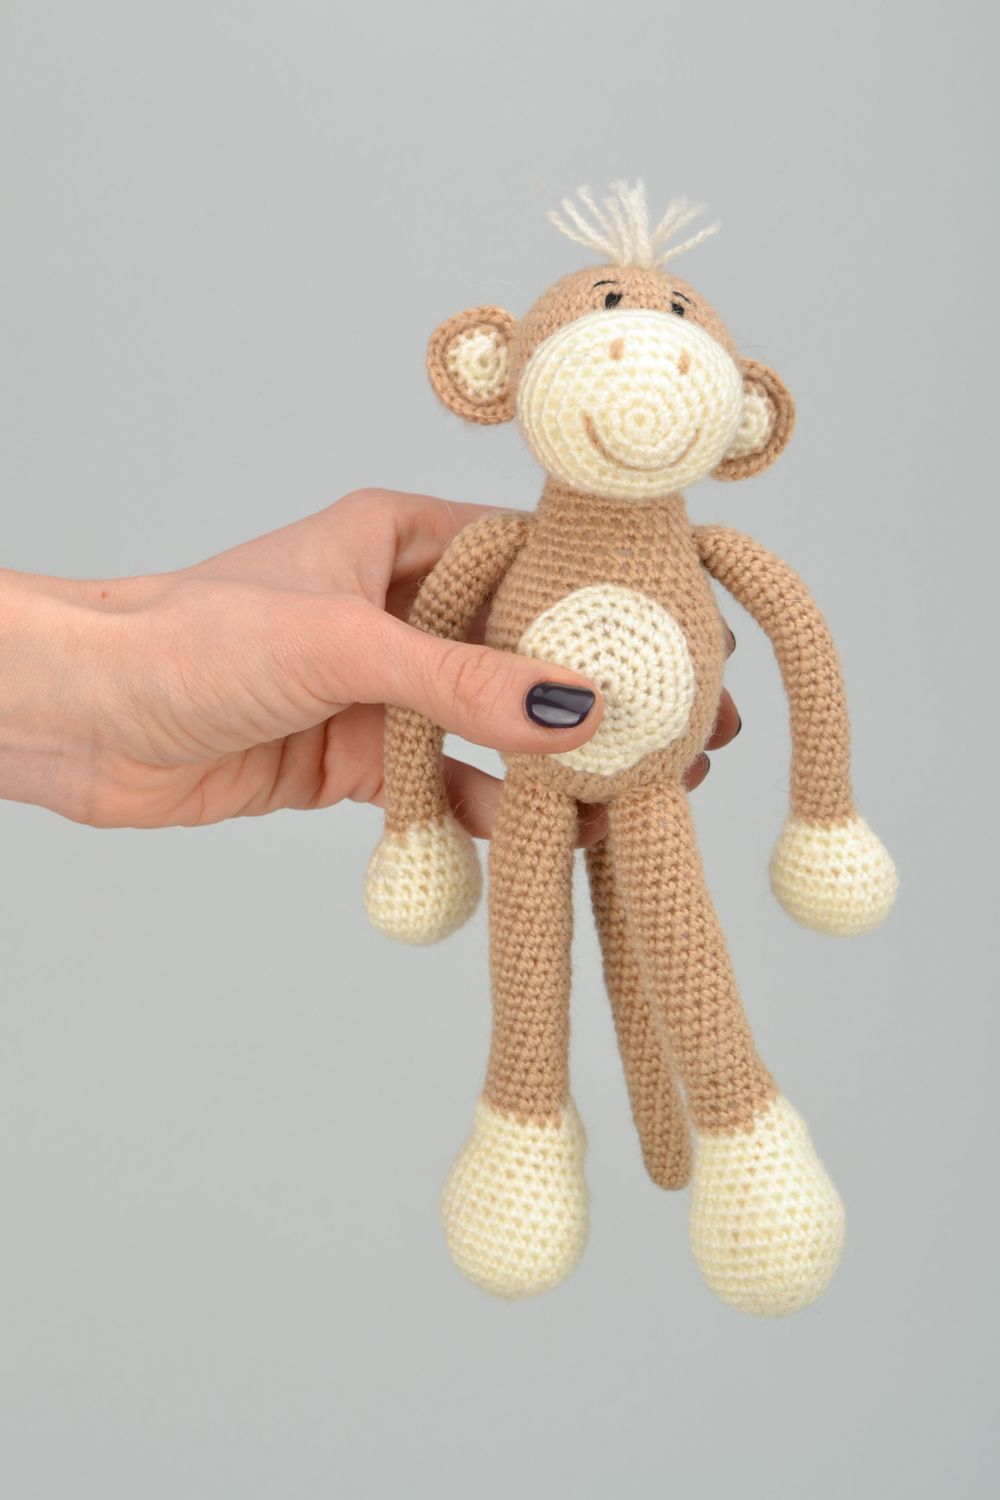 Handmade crochet soft toy Monkey photo 1